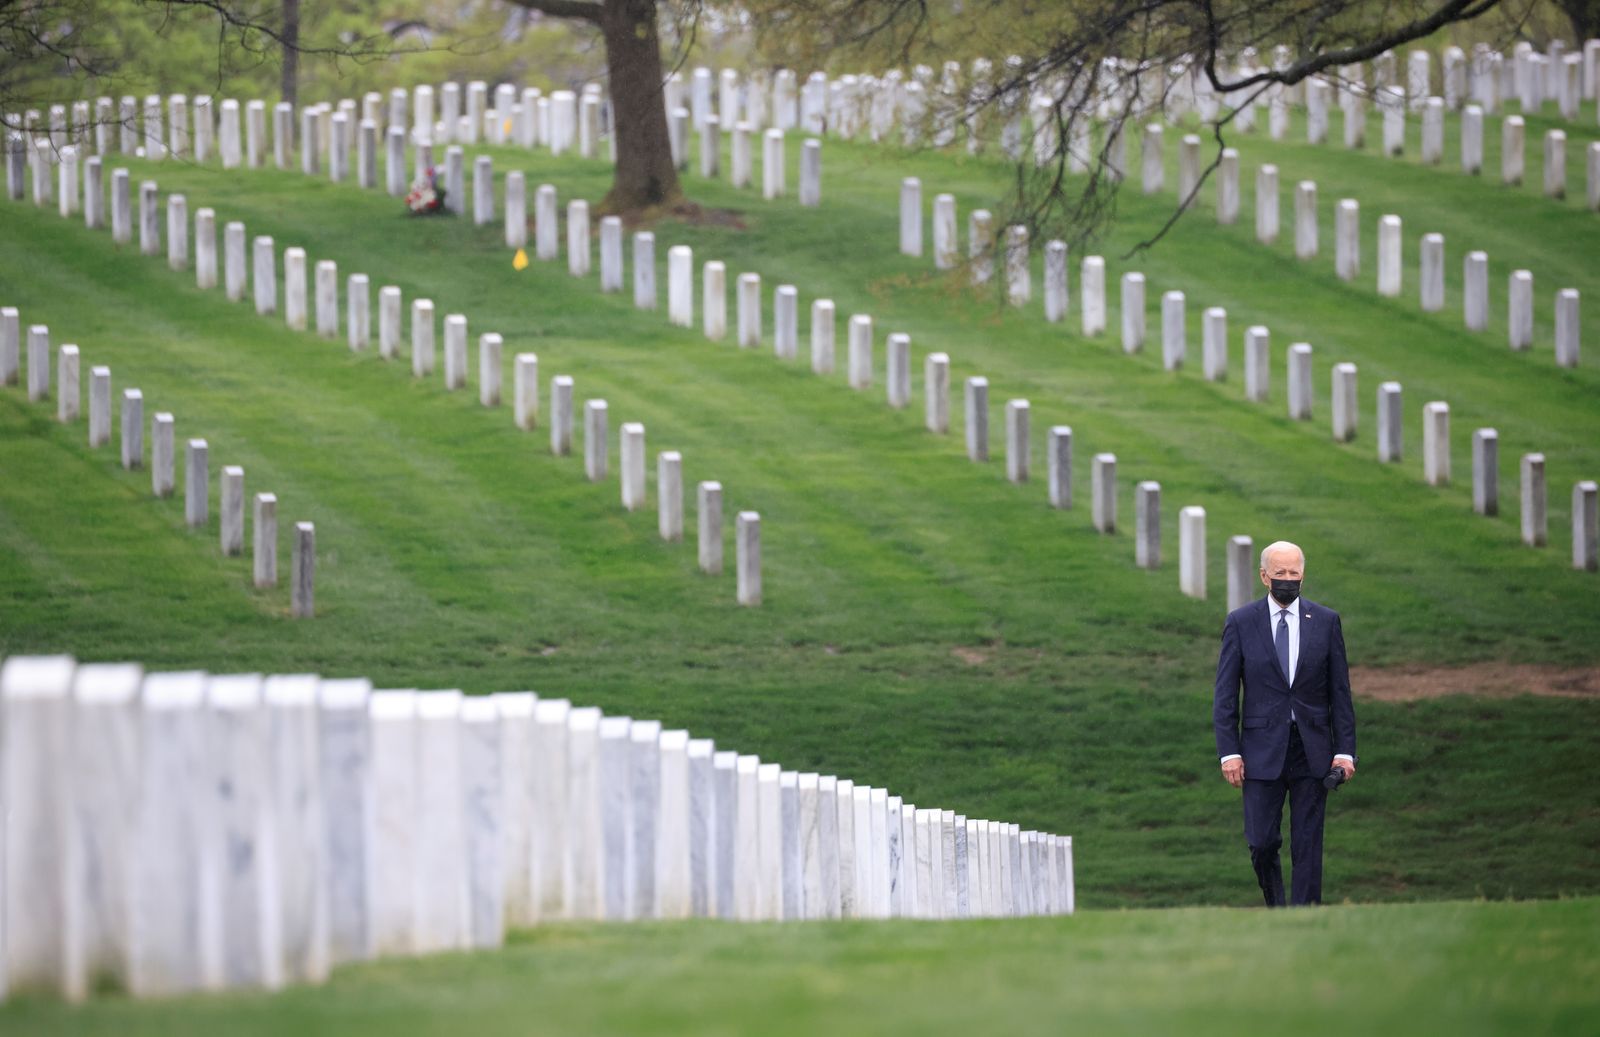 الرئيس الأميركي جو بايدن يزور مقبرة أرلينغتون الوطنية حيث يرقد قتلى الجيش الأميركي الذين سقطوا في أفغانستان. 14 أبريل 2021.  - REUTERS